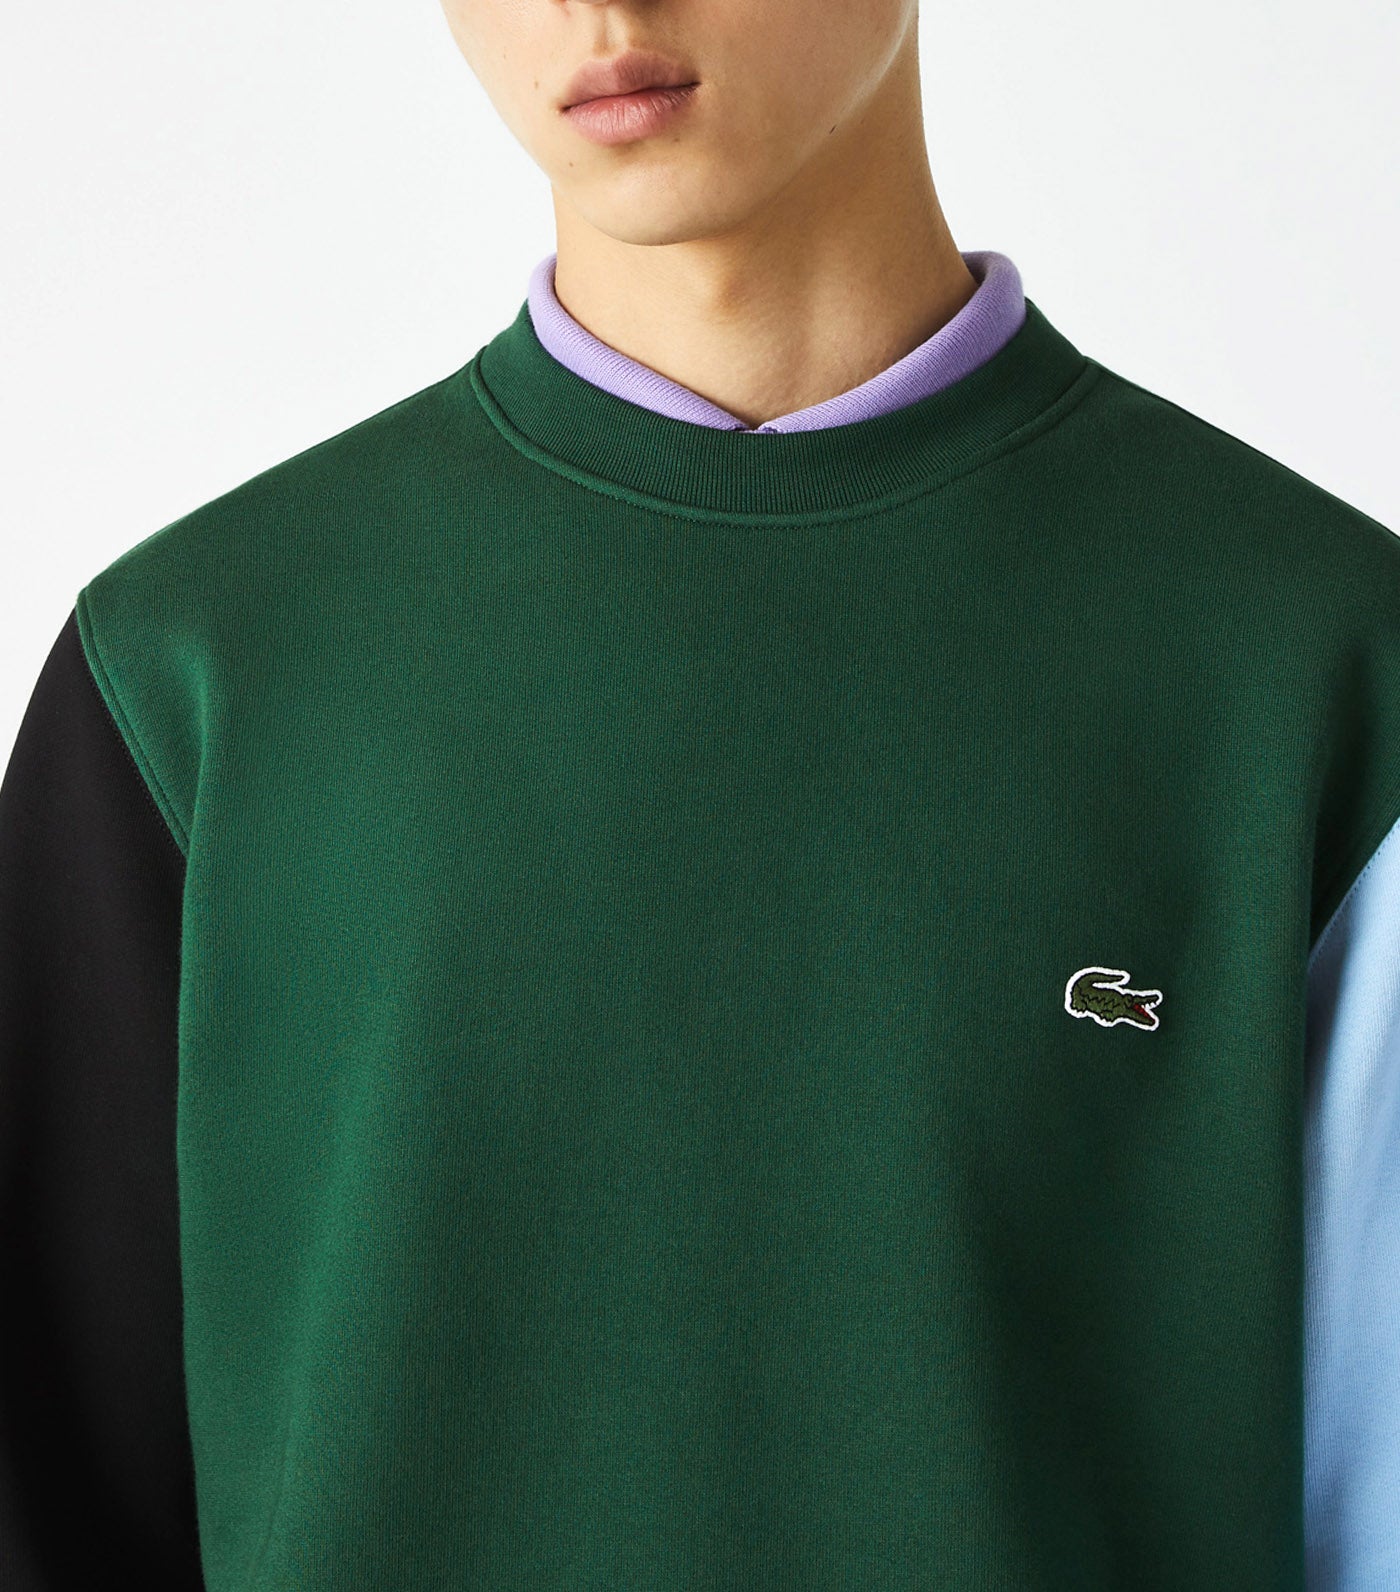 Men's Brushed Fleece Sweatshirt Green/Black/Overview